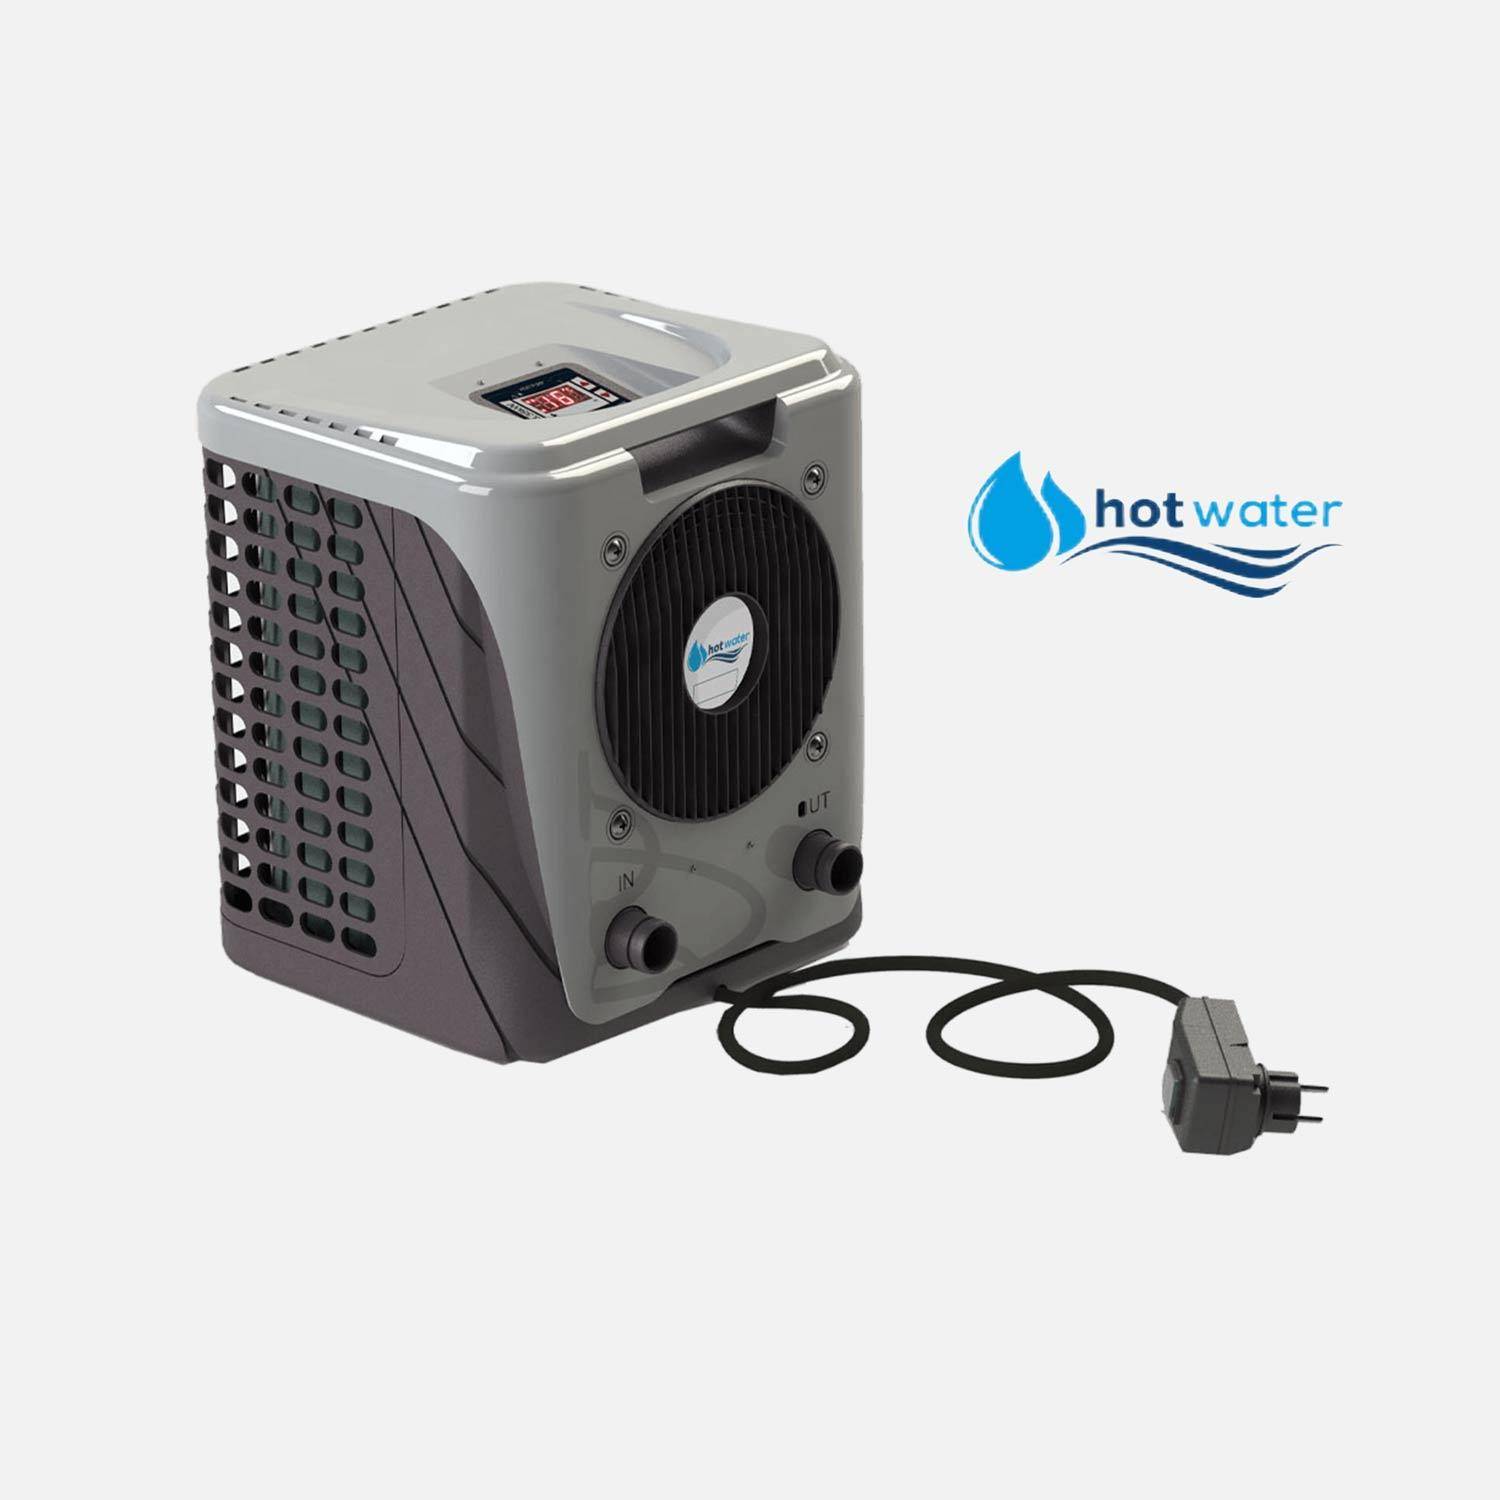 Pompe à chaleur Bestway hot water, 3.35kW pour piscine hors-sol < 20m3, économique, contrôle de température, antigel Photo1